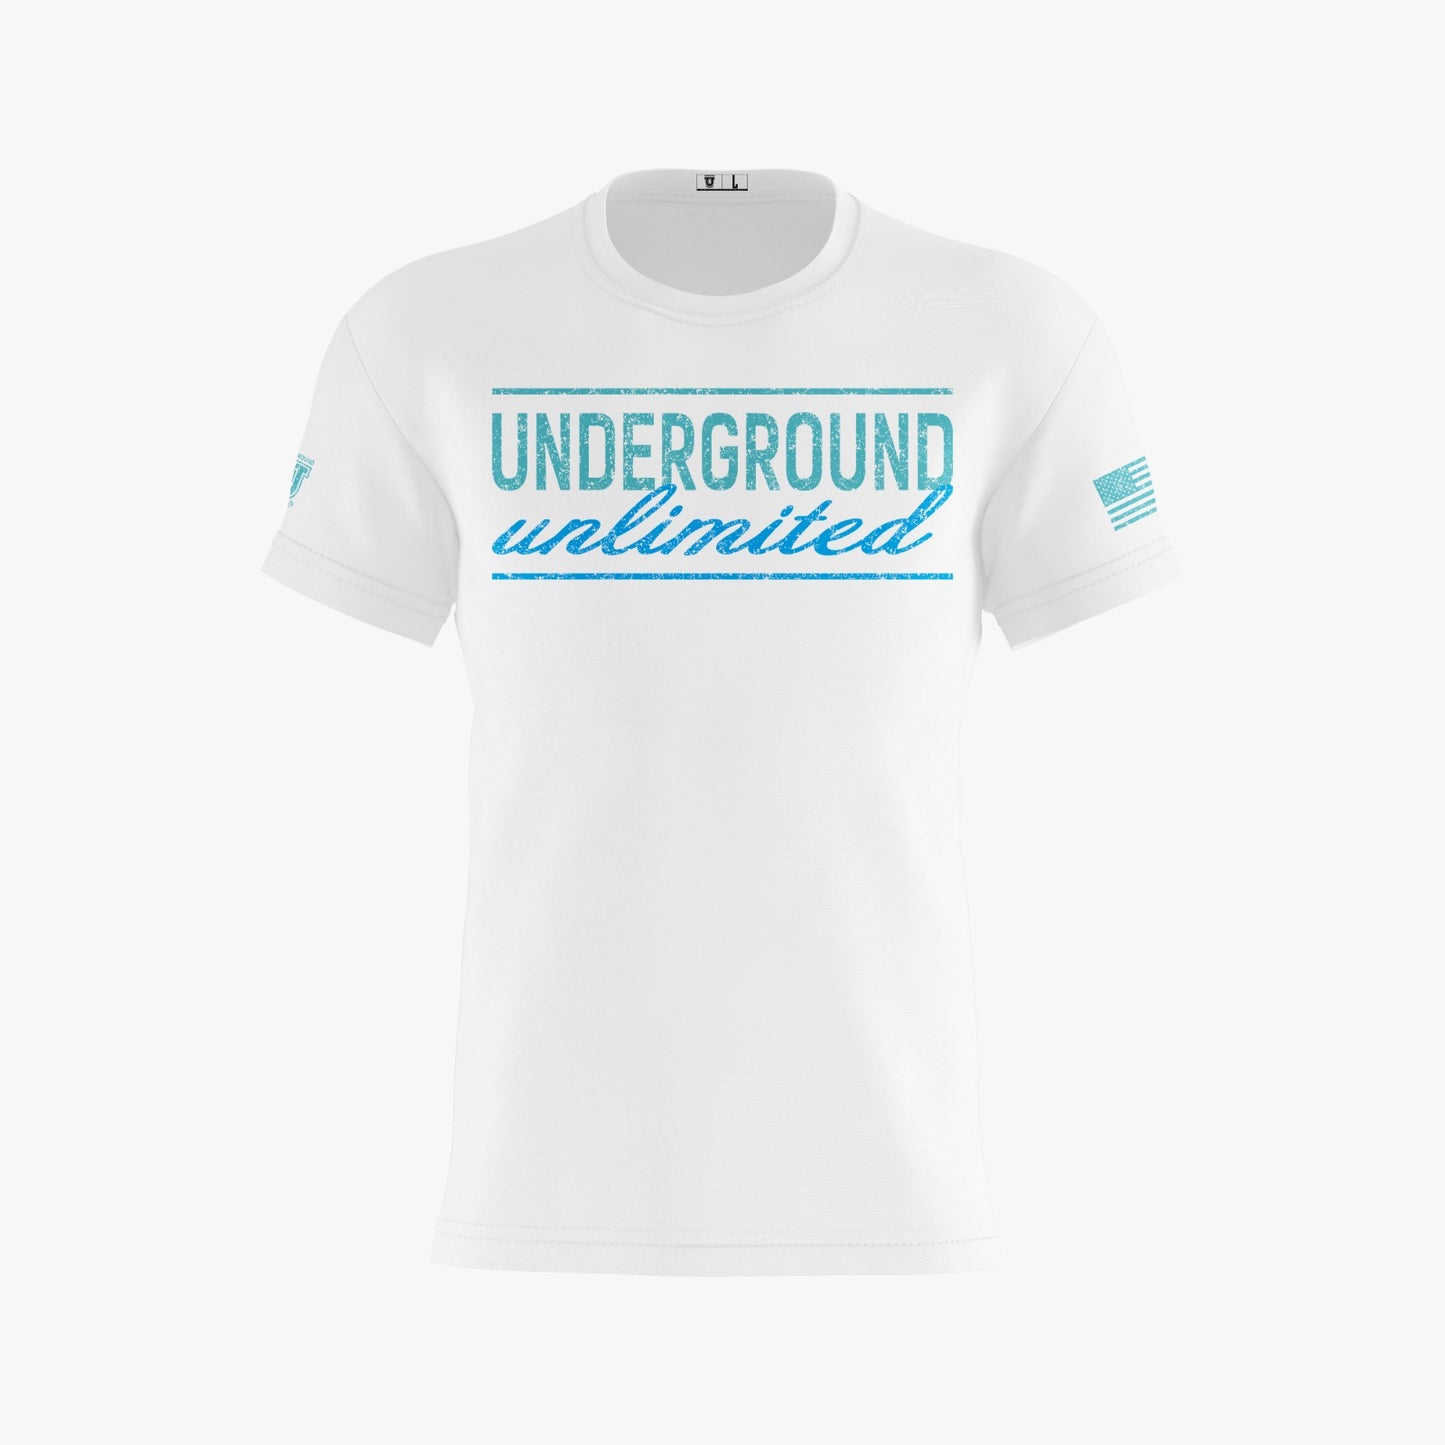 Underground Unlimited Performance Dri Tech Design ~ White